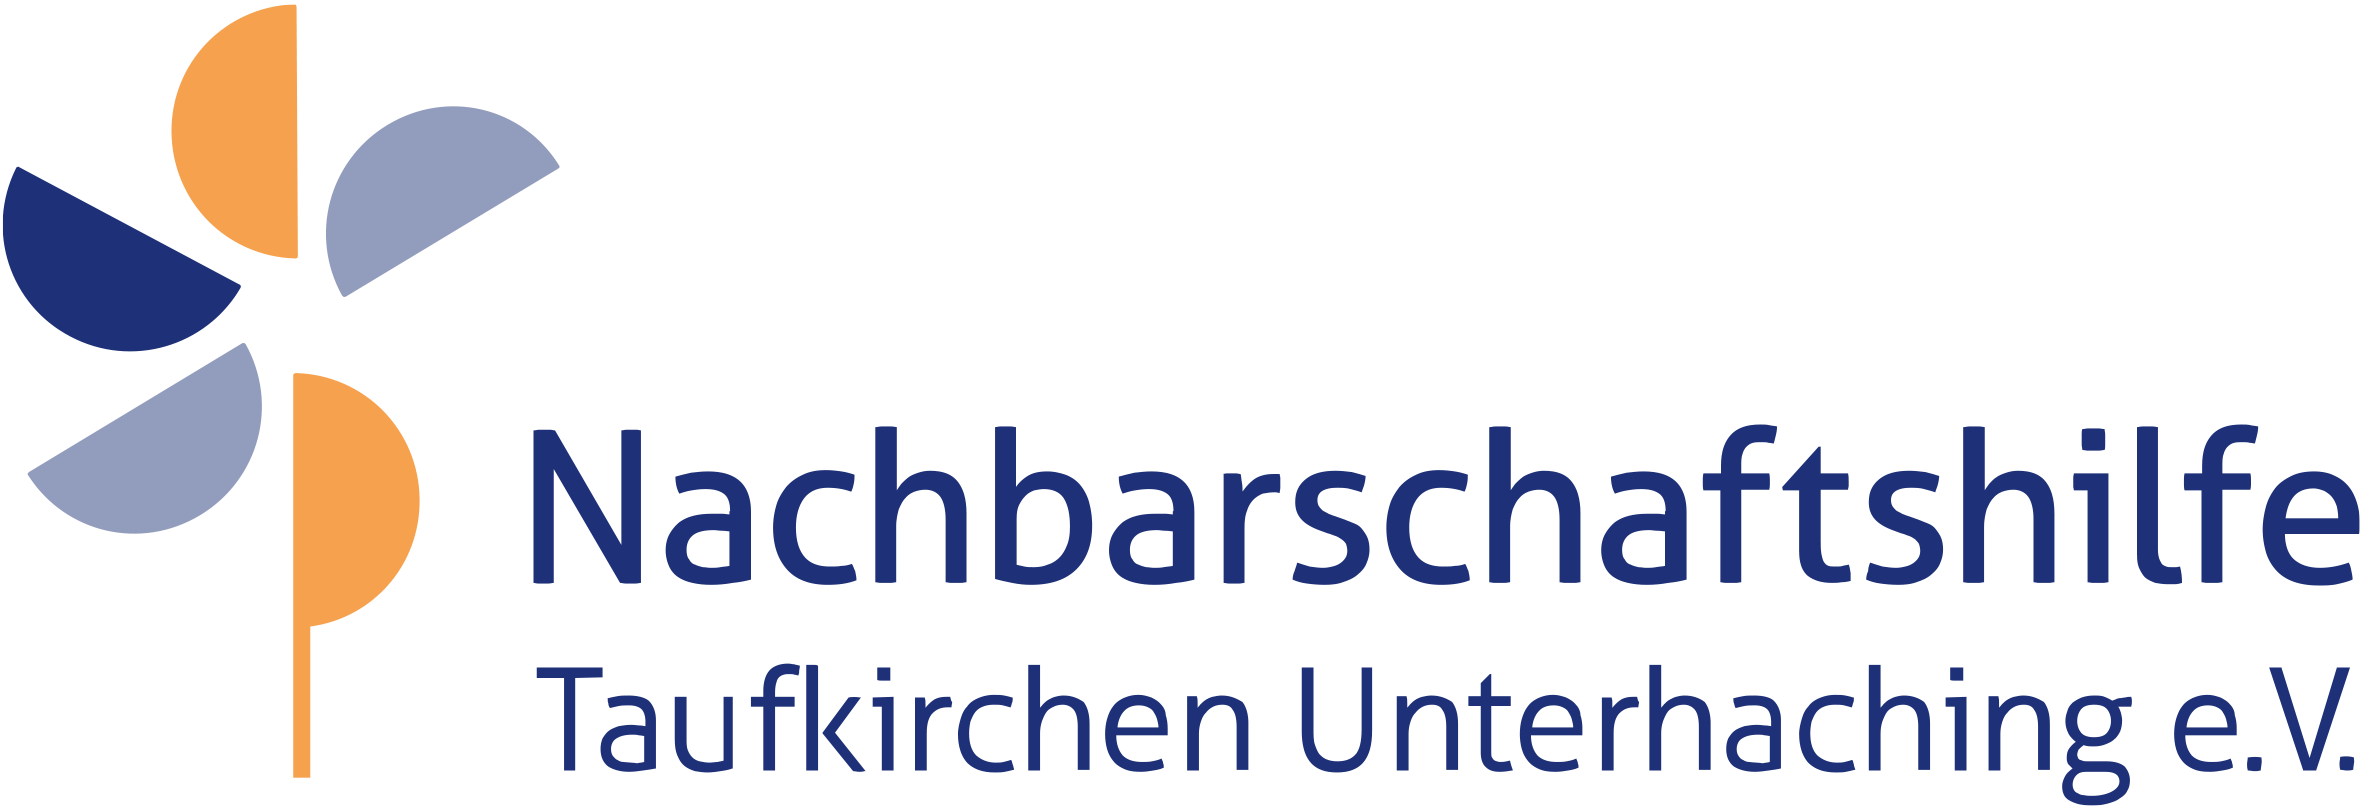 Nachbarschaftshilfe Taufkirchen Unterhaching - Geschäftsstellen & Standorte